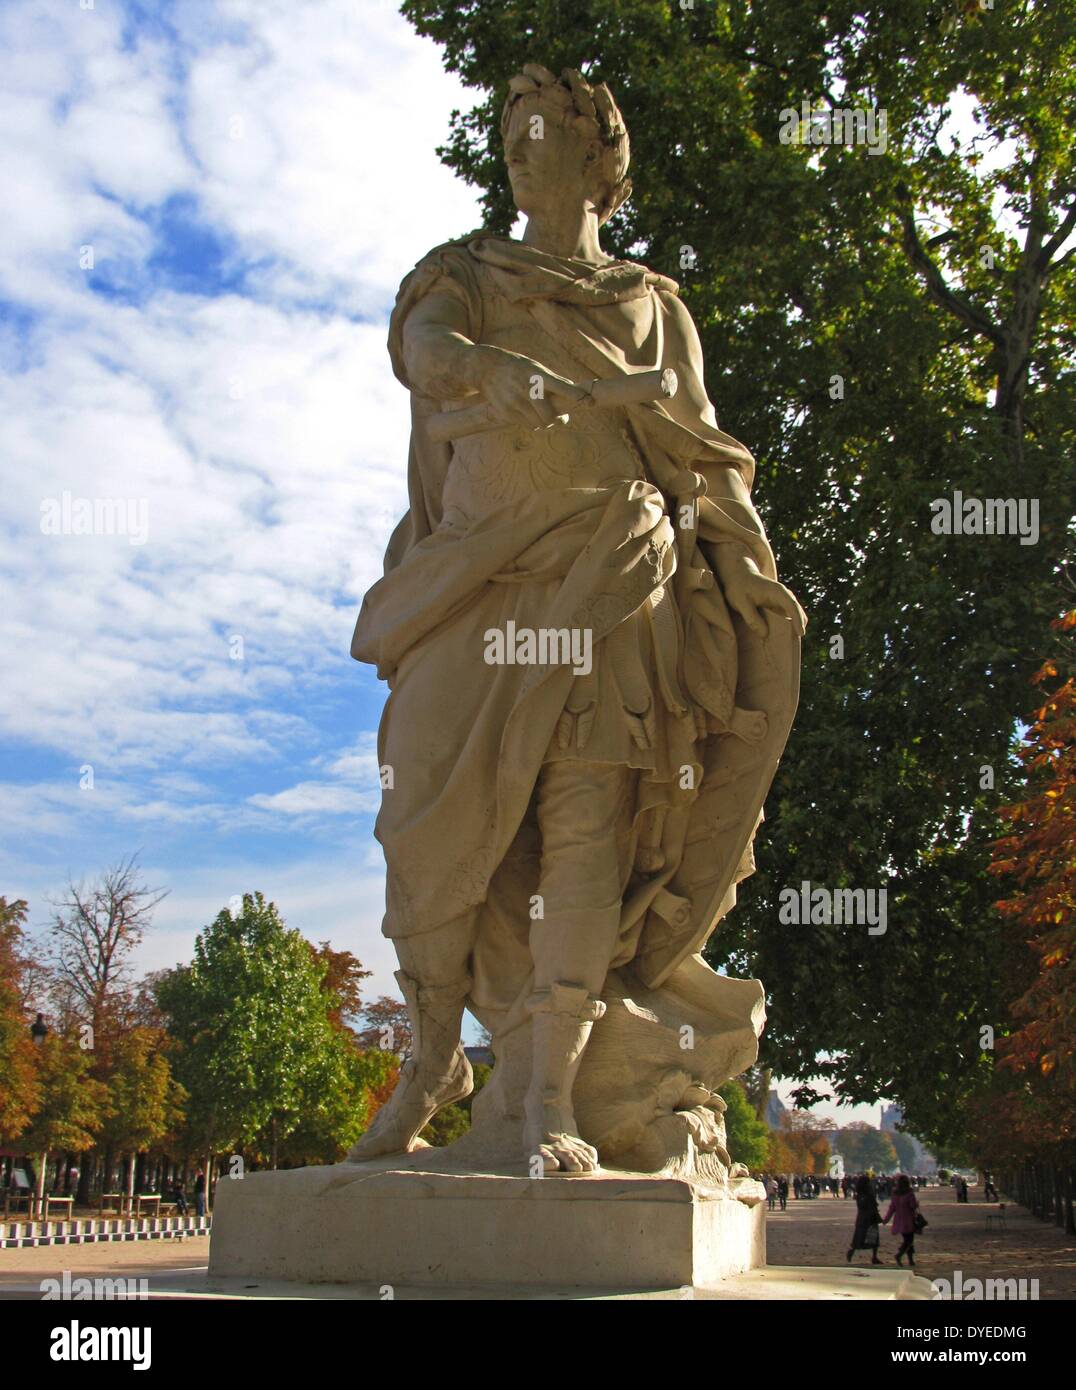 Statue of Julius Caesar at the Louvre 2013. Roman Emperor. Stock Photo